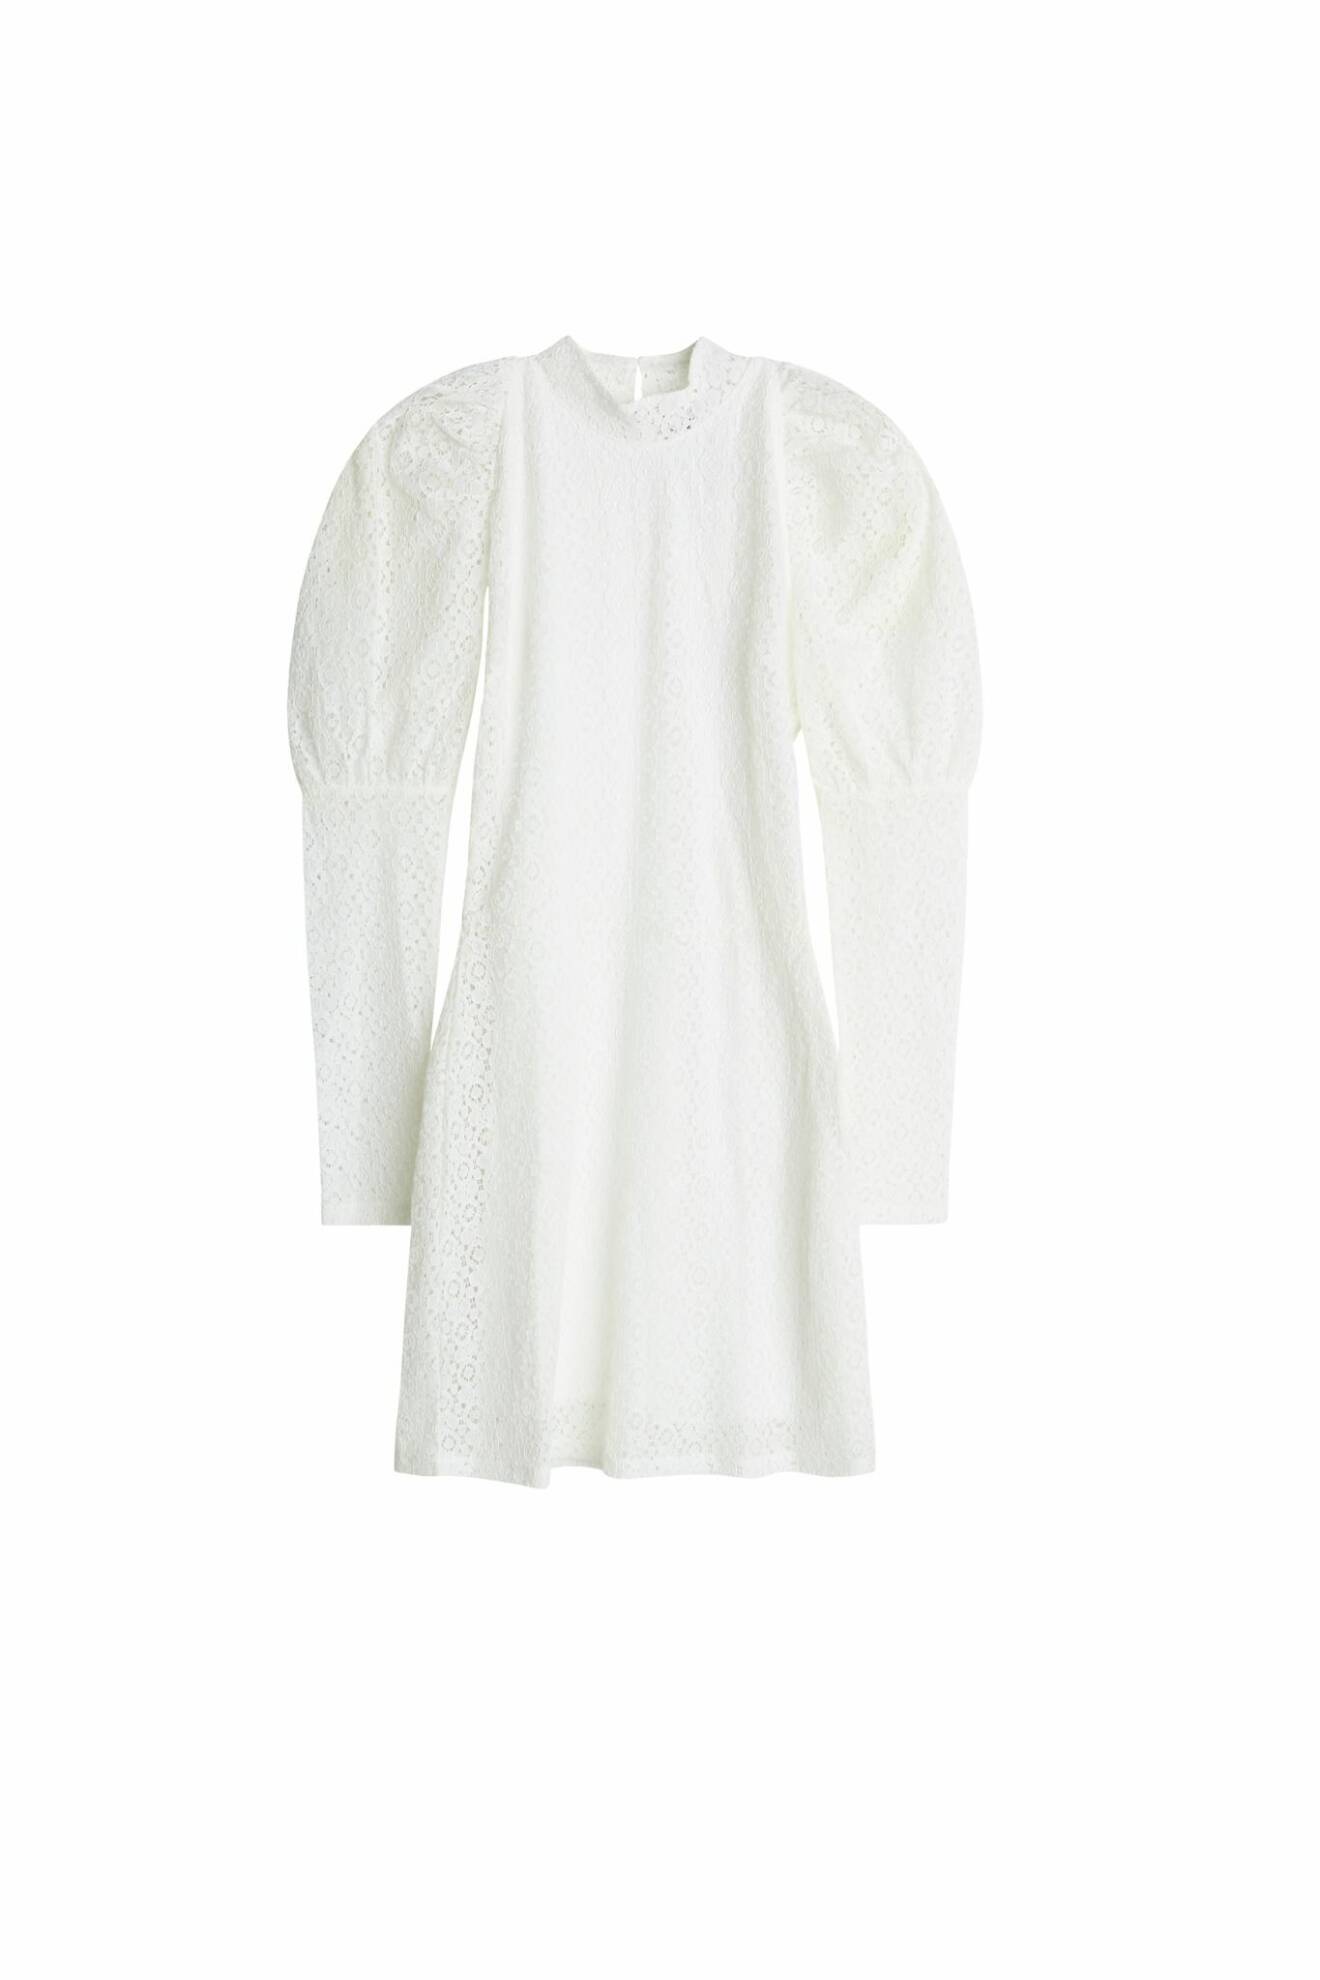 Maja Nilsson Lindelöf gör kollektion med Gina tricot – vit klänning med puffärm